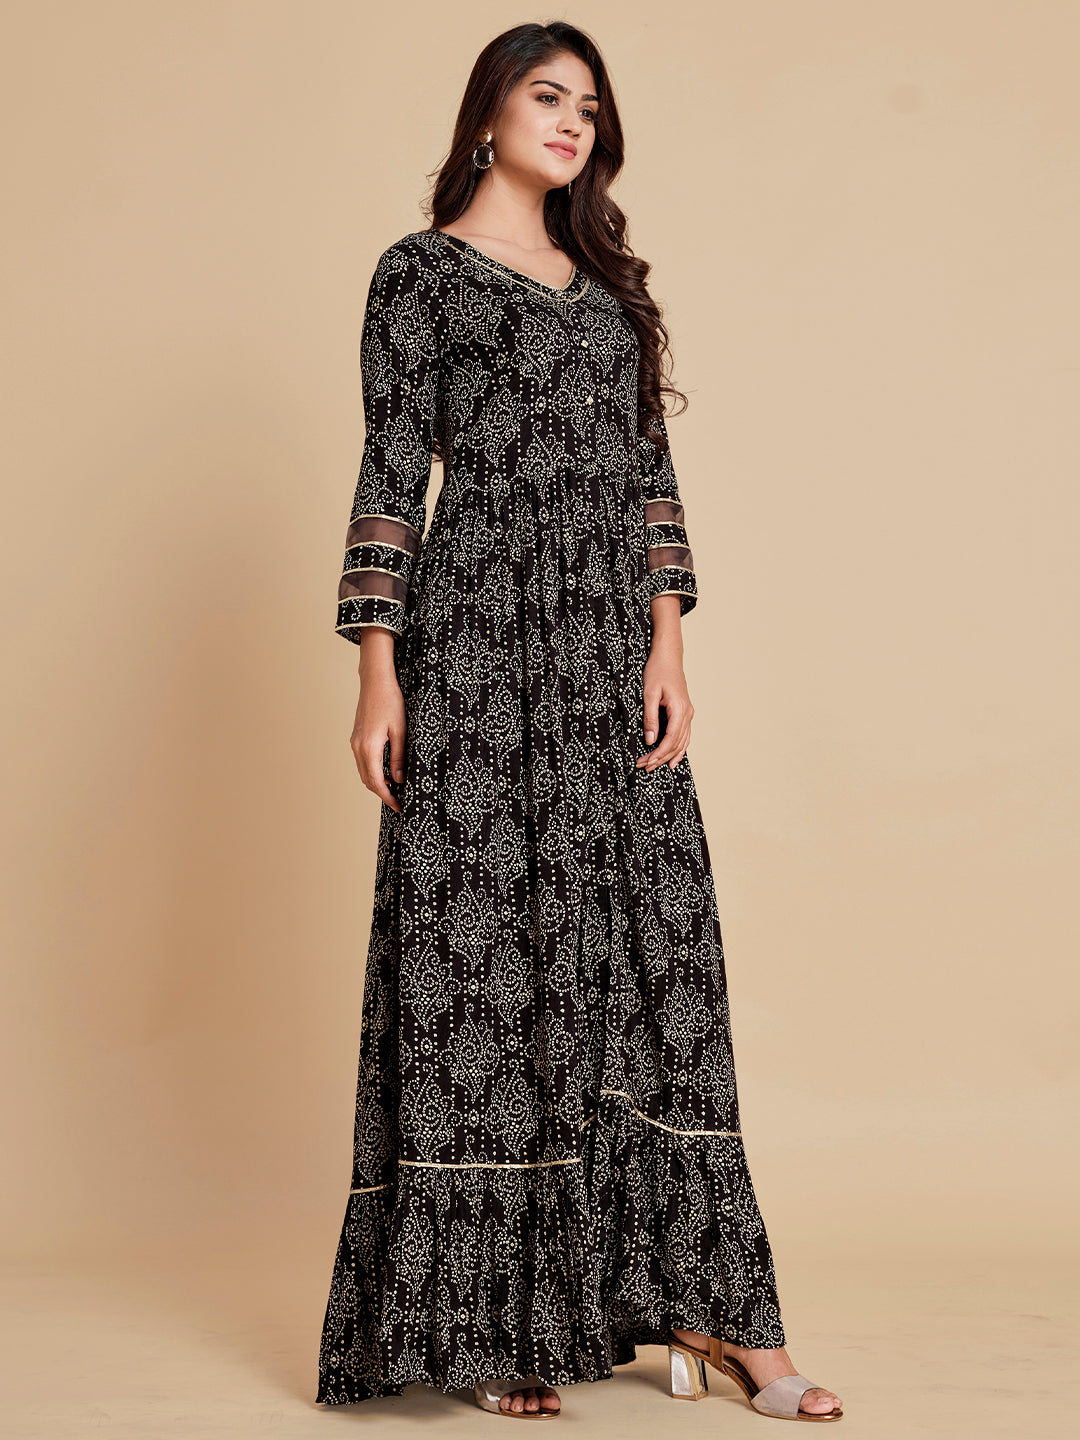 Black Bandhani Flared Dress - ARH701